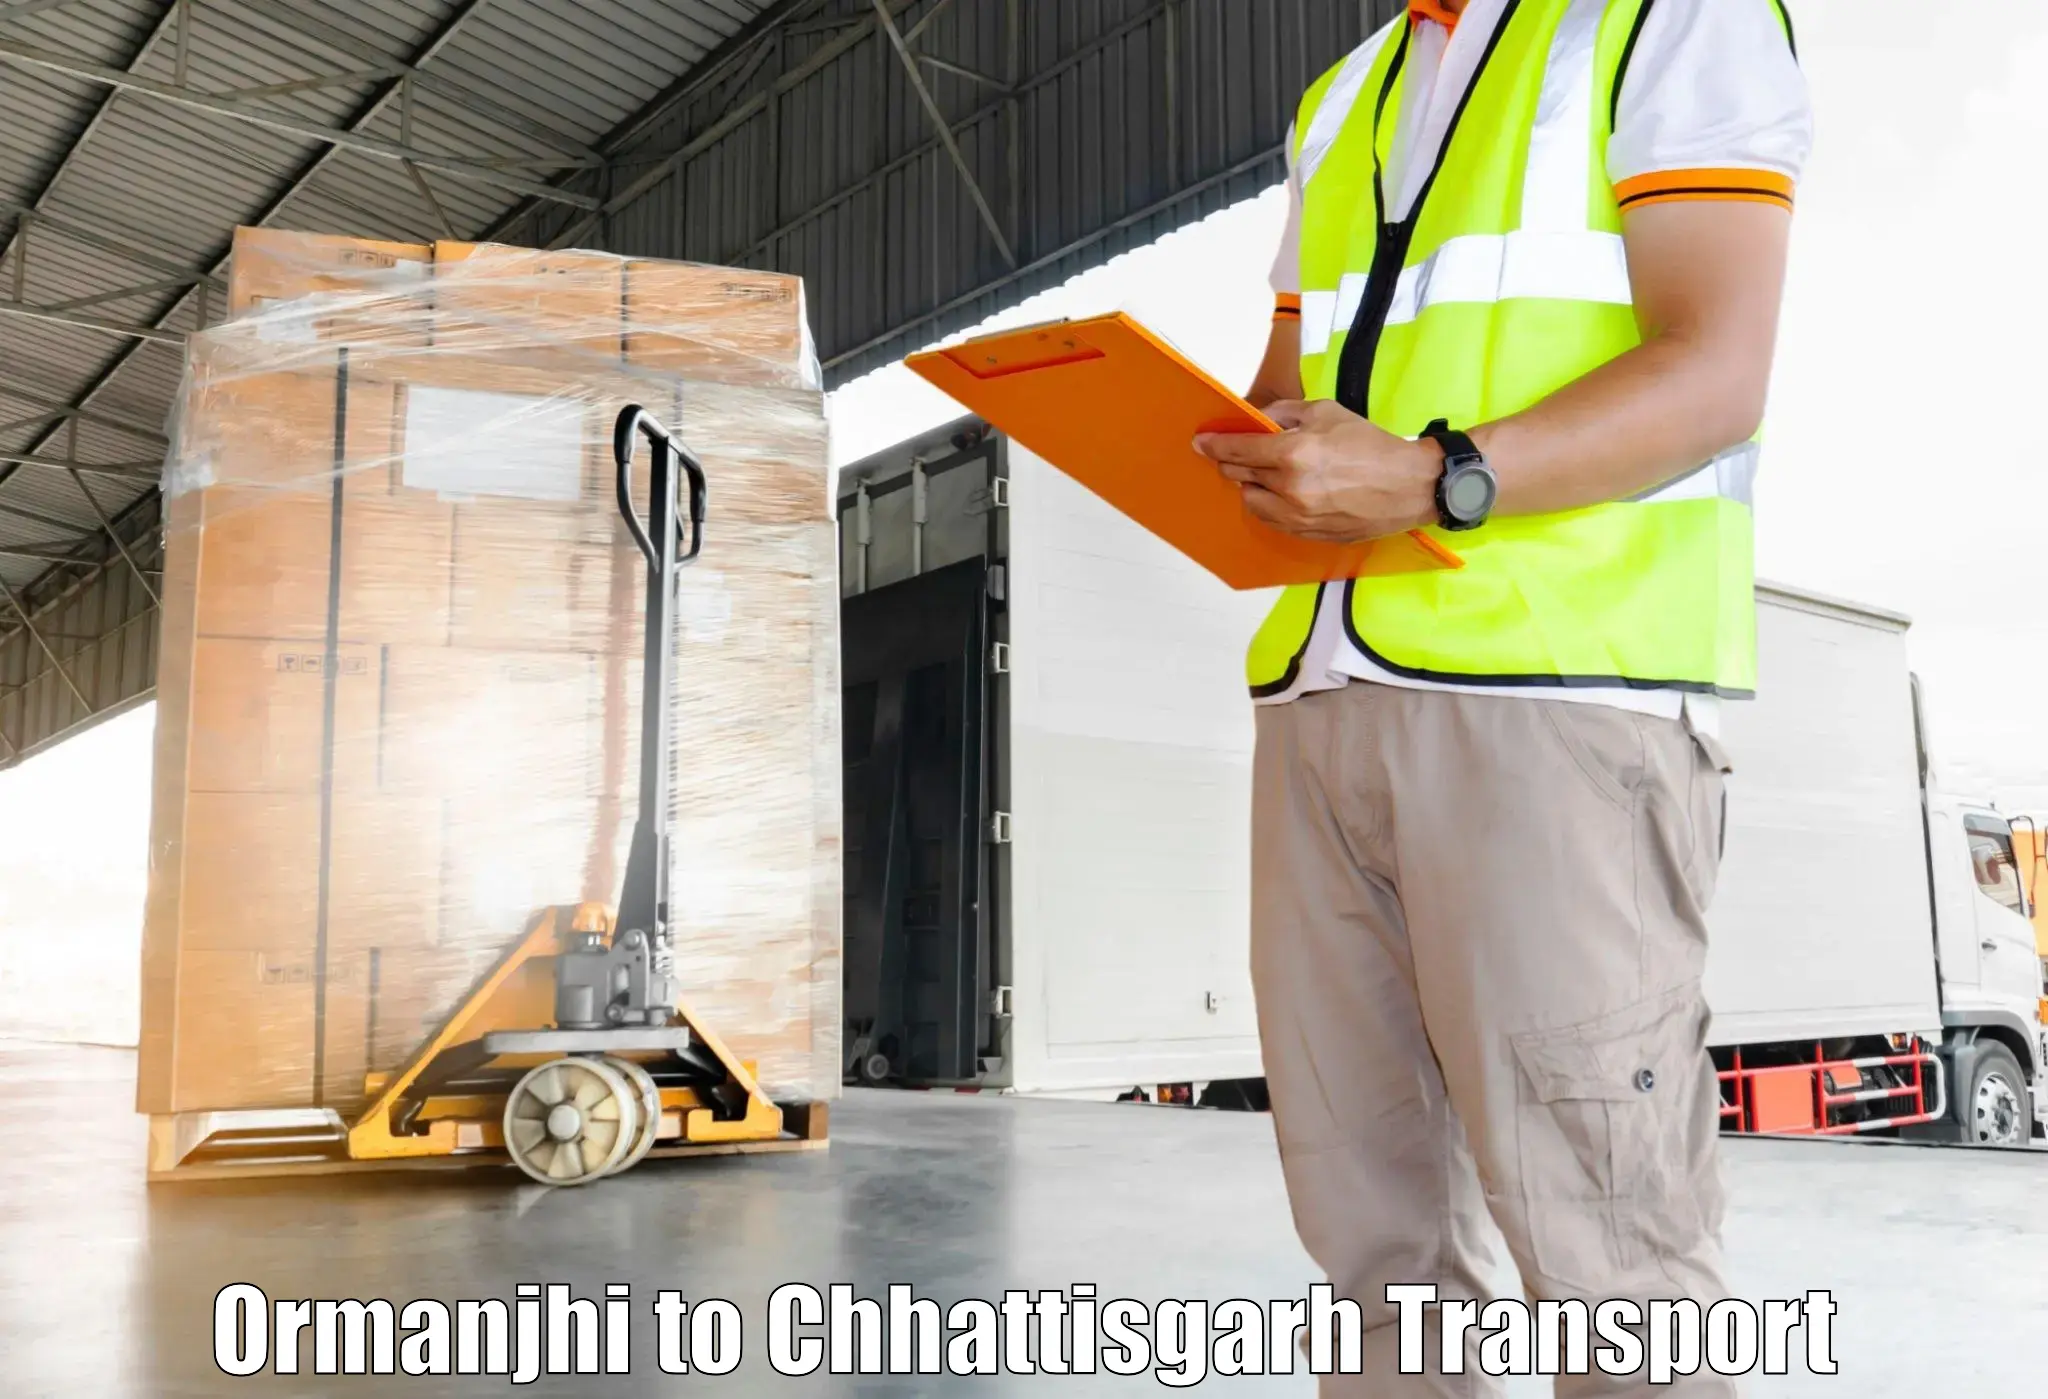 Online transport service Ormanjhi to Ramanujganj